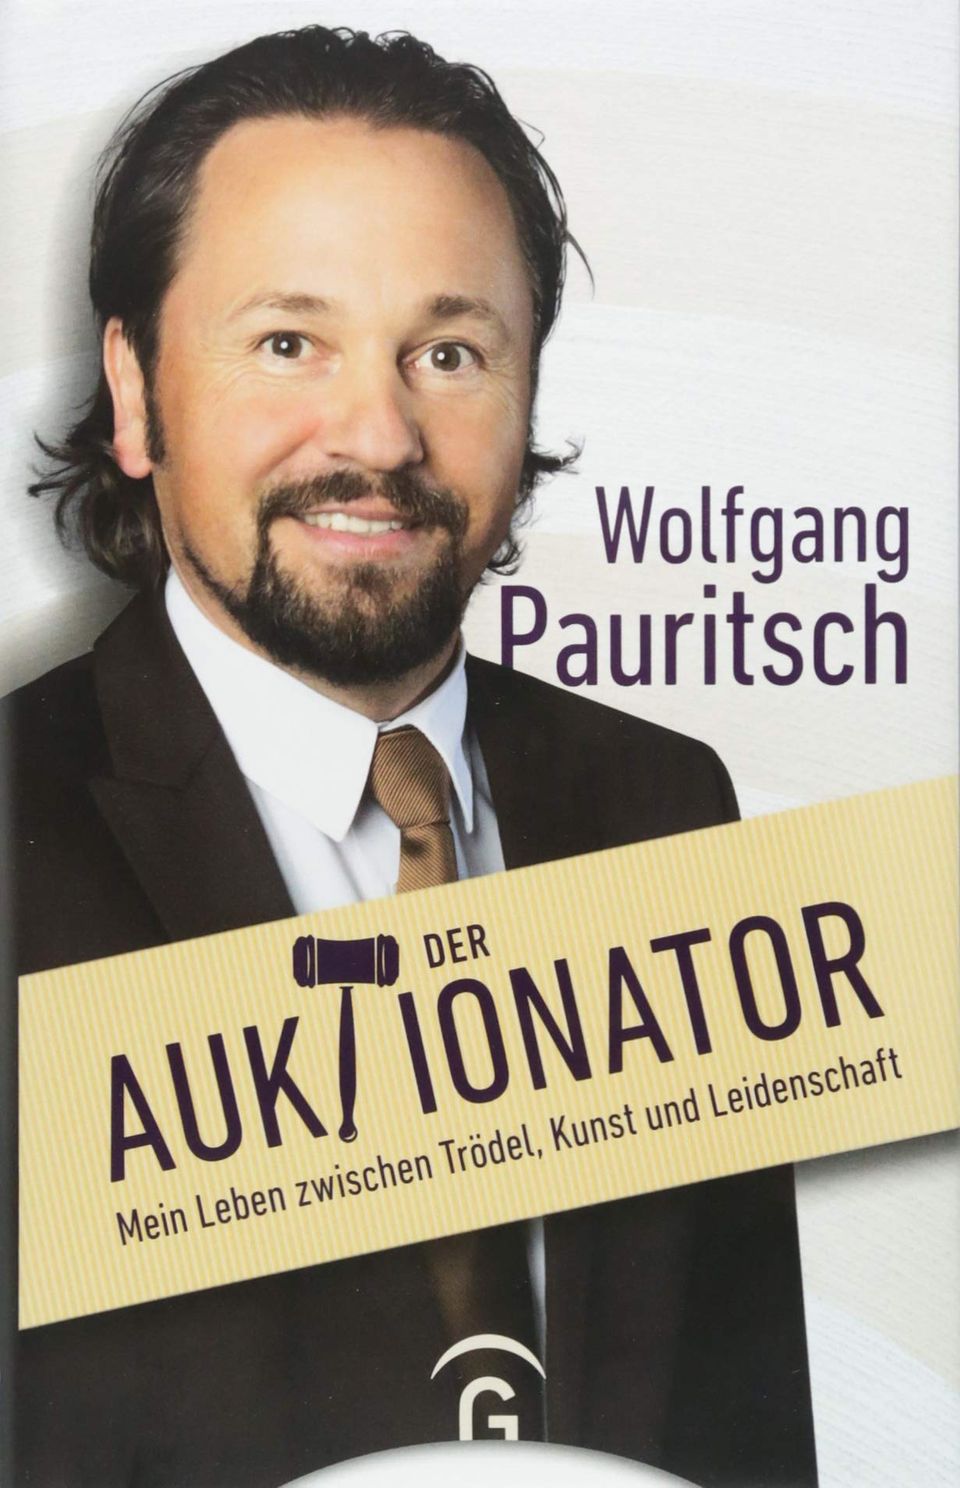 "Der Auktionator" von Wolfgang Pauritsch